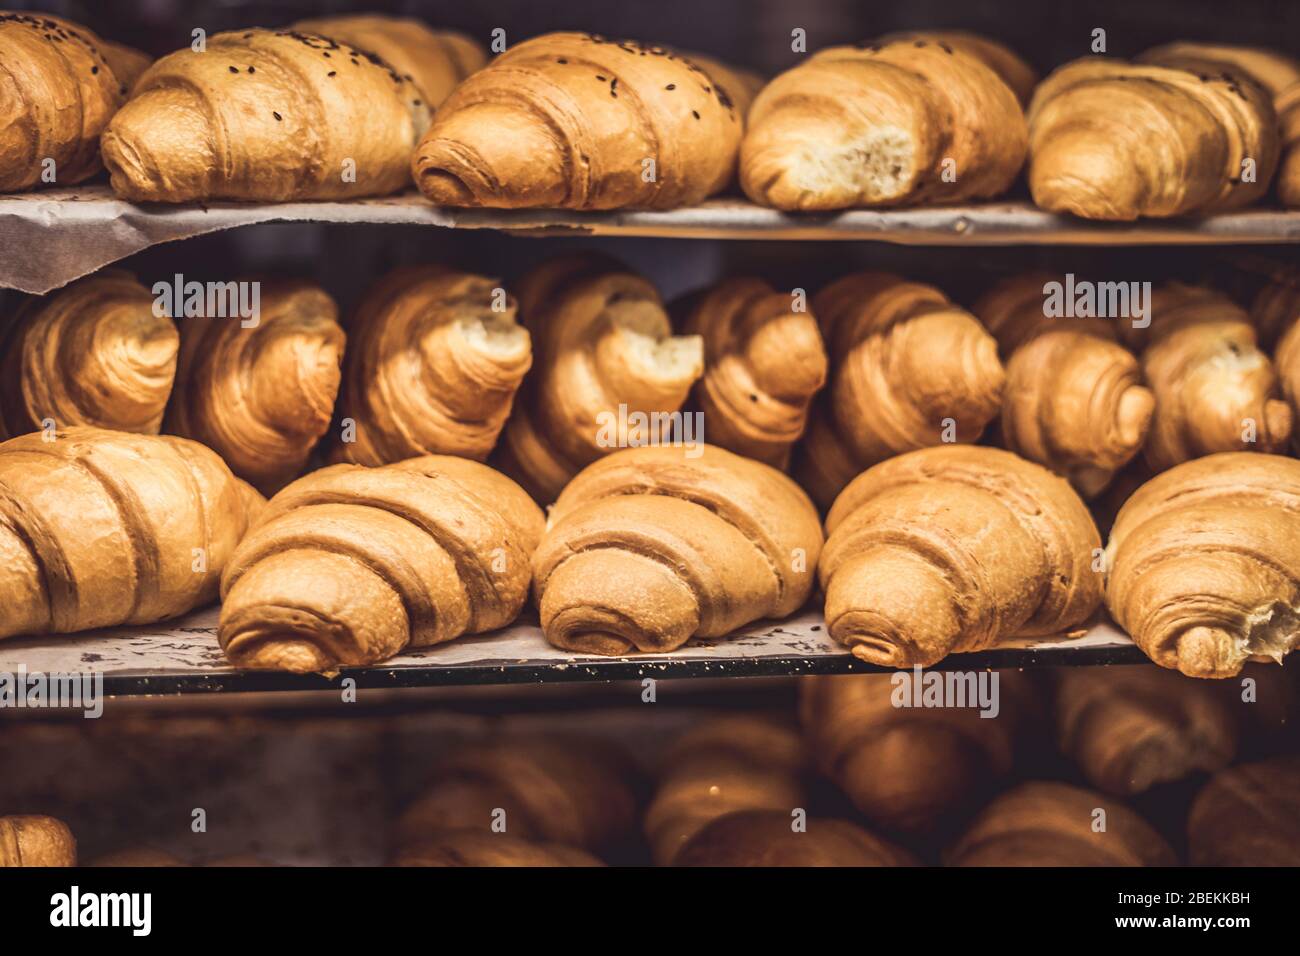 Croissants auf einer Vitrine in einem Bäckereiladen Stockfotografie - Alamy